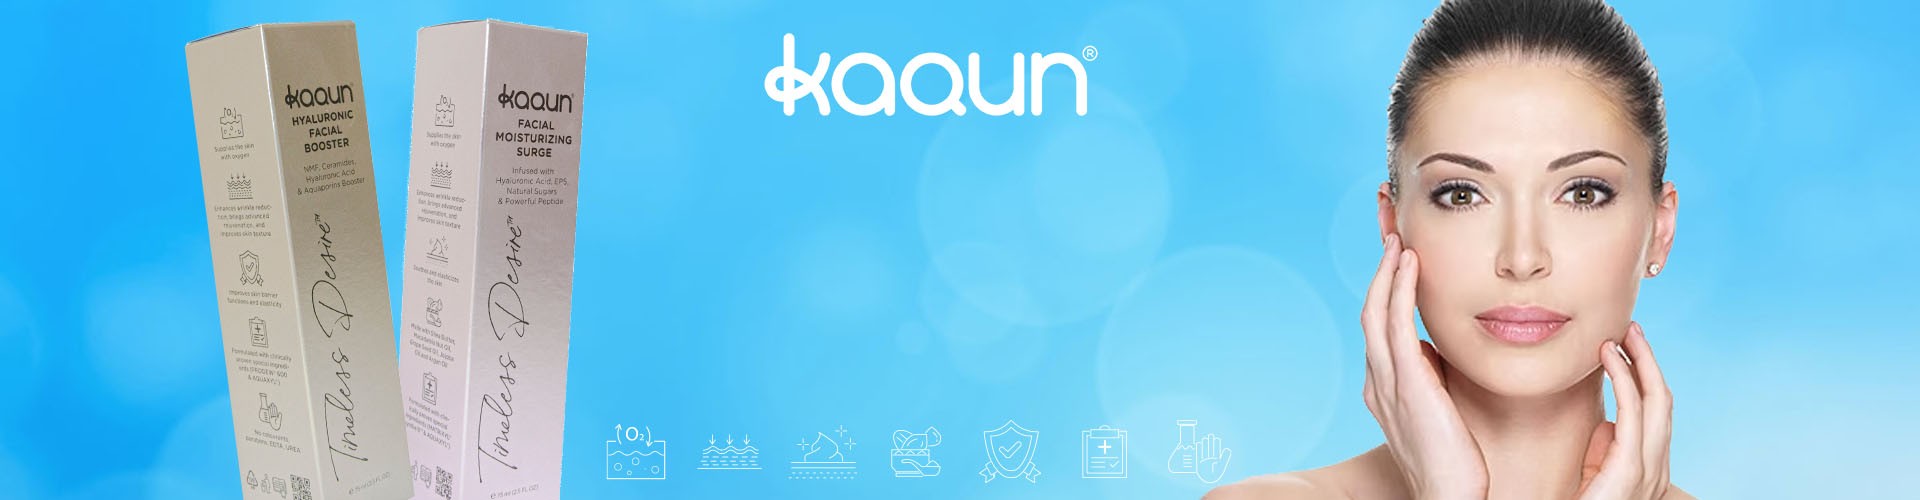 New Kaqun skin care cosmetics